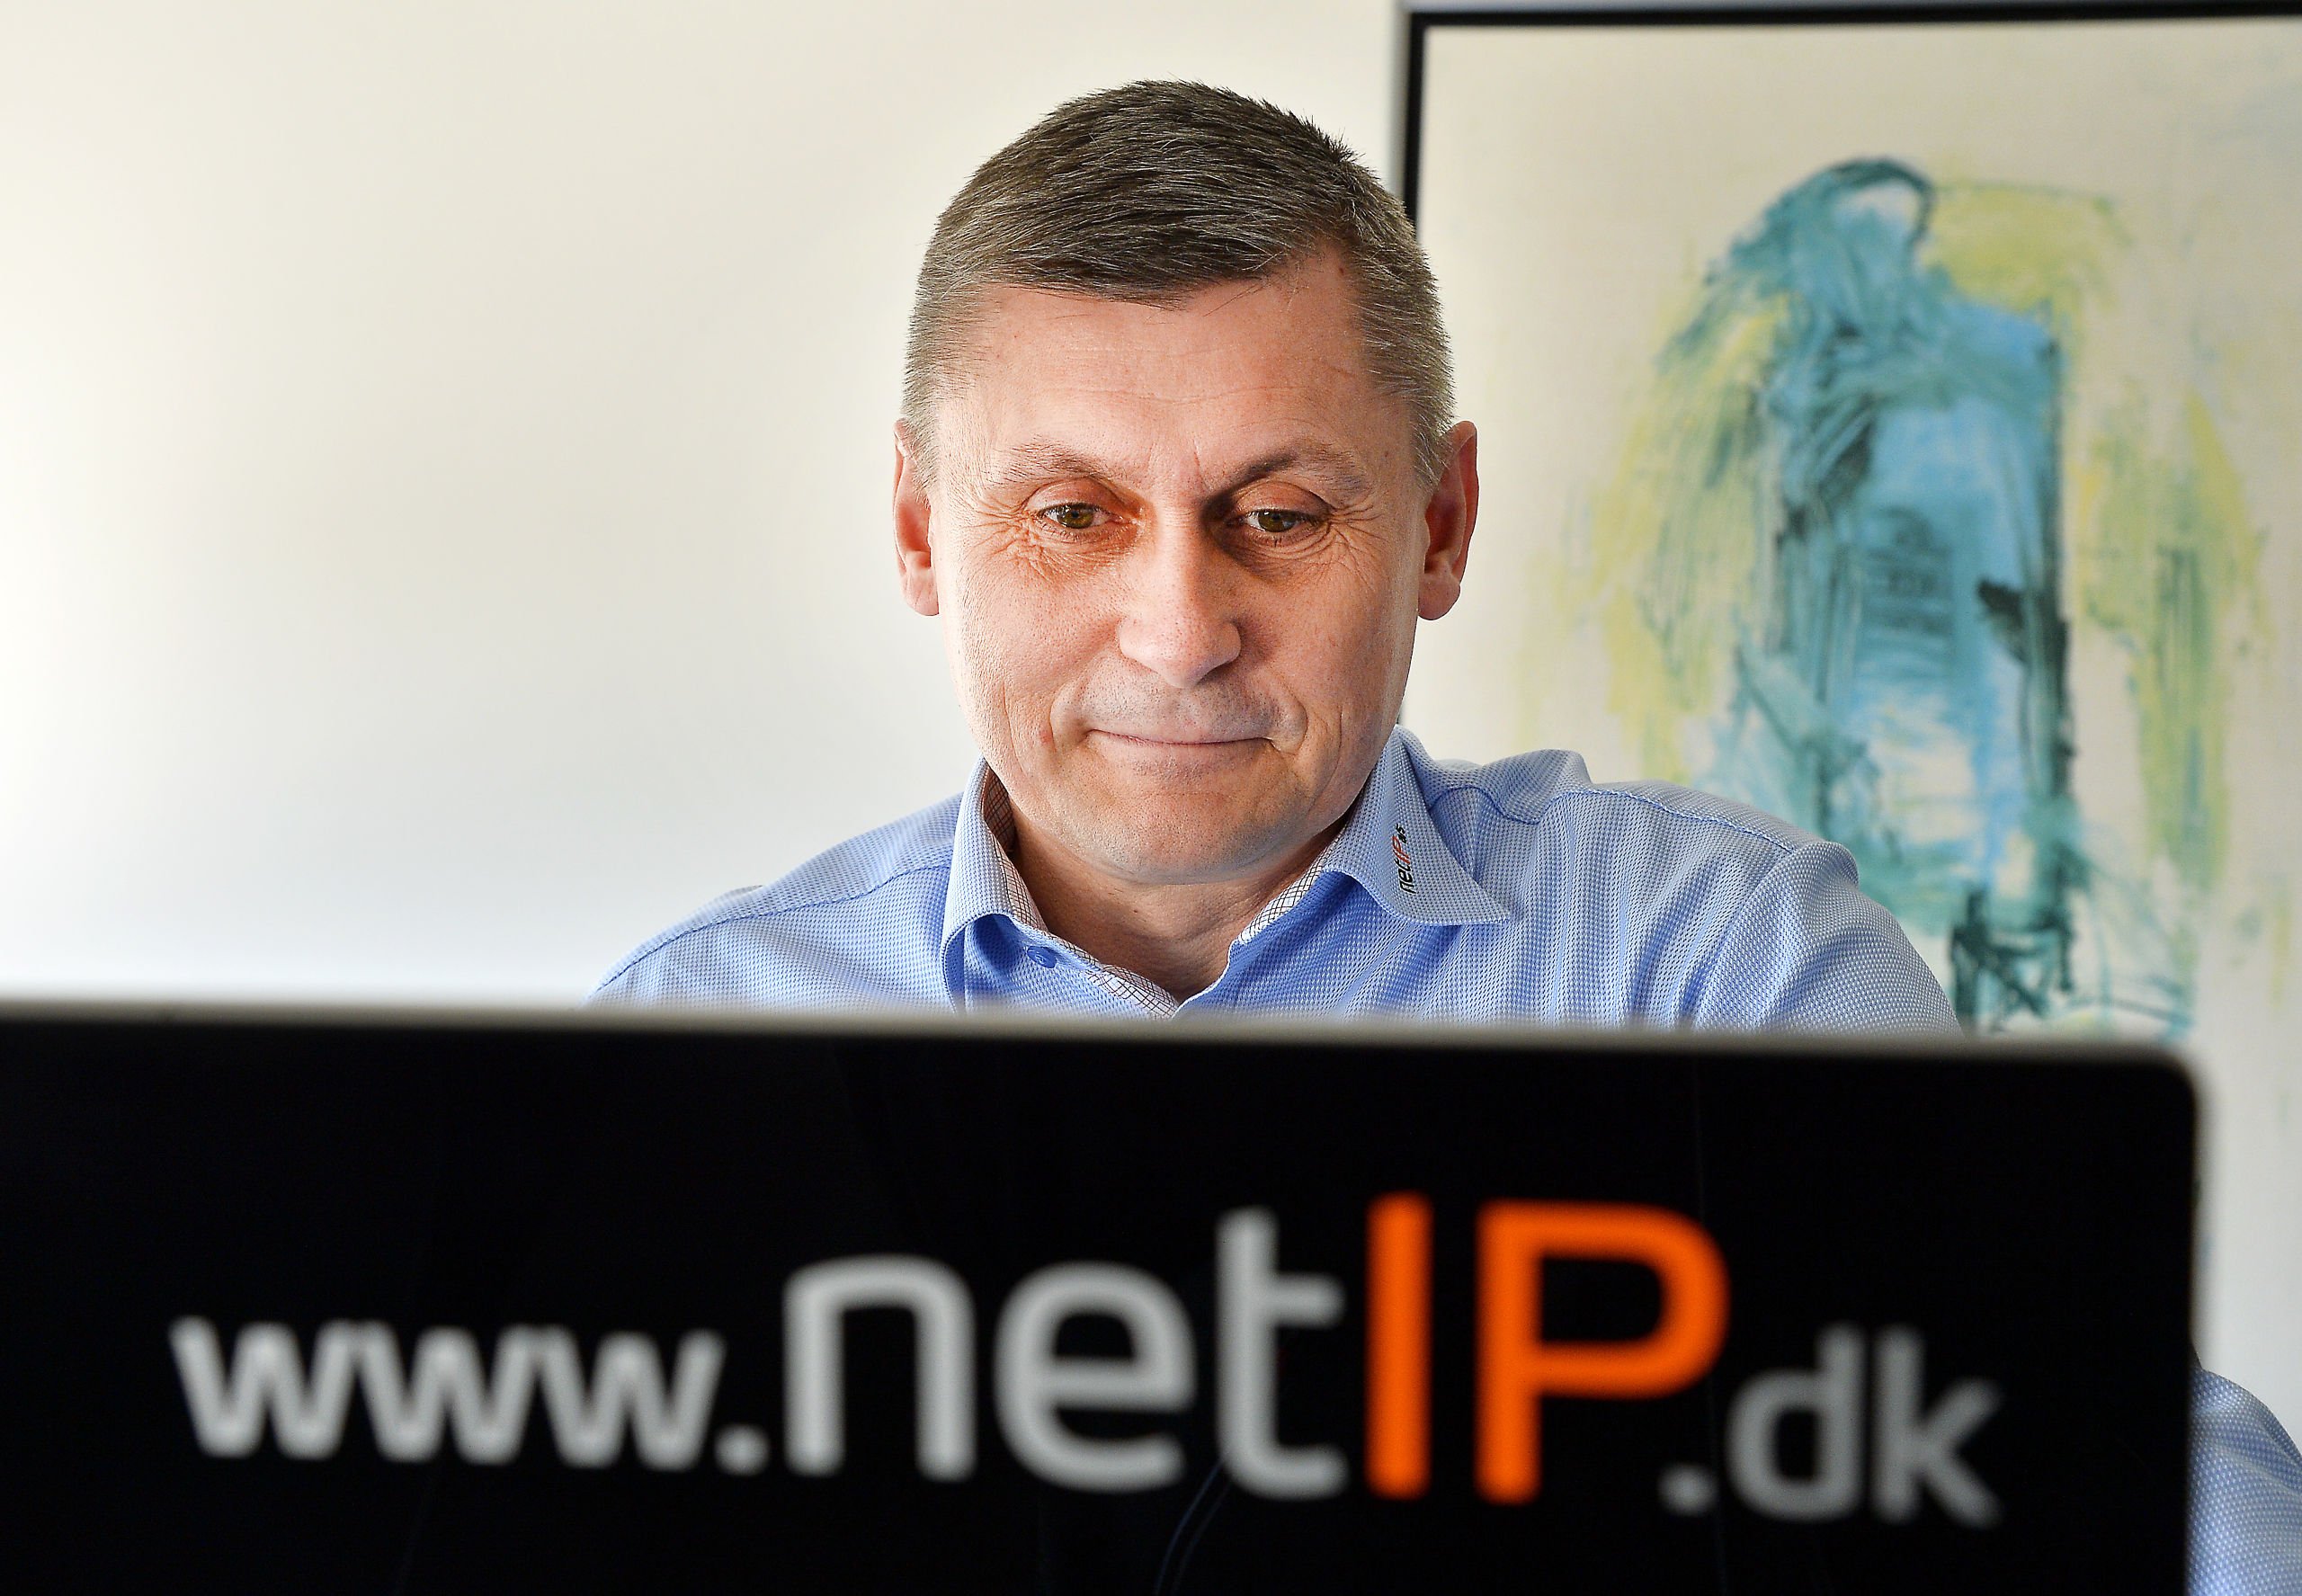 NetIP skifter stort set hele ledelsen ud: Ejer indtræder selv som administrerende direktør